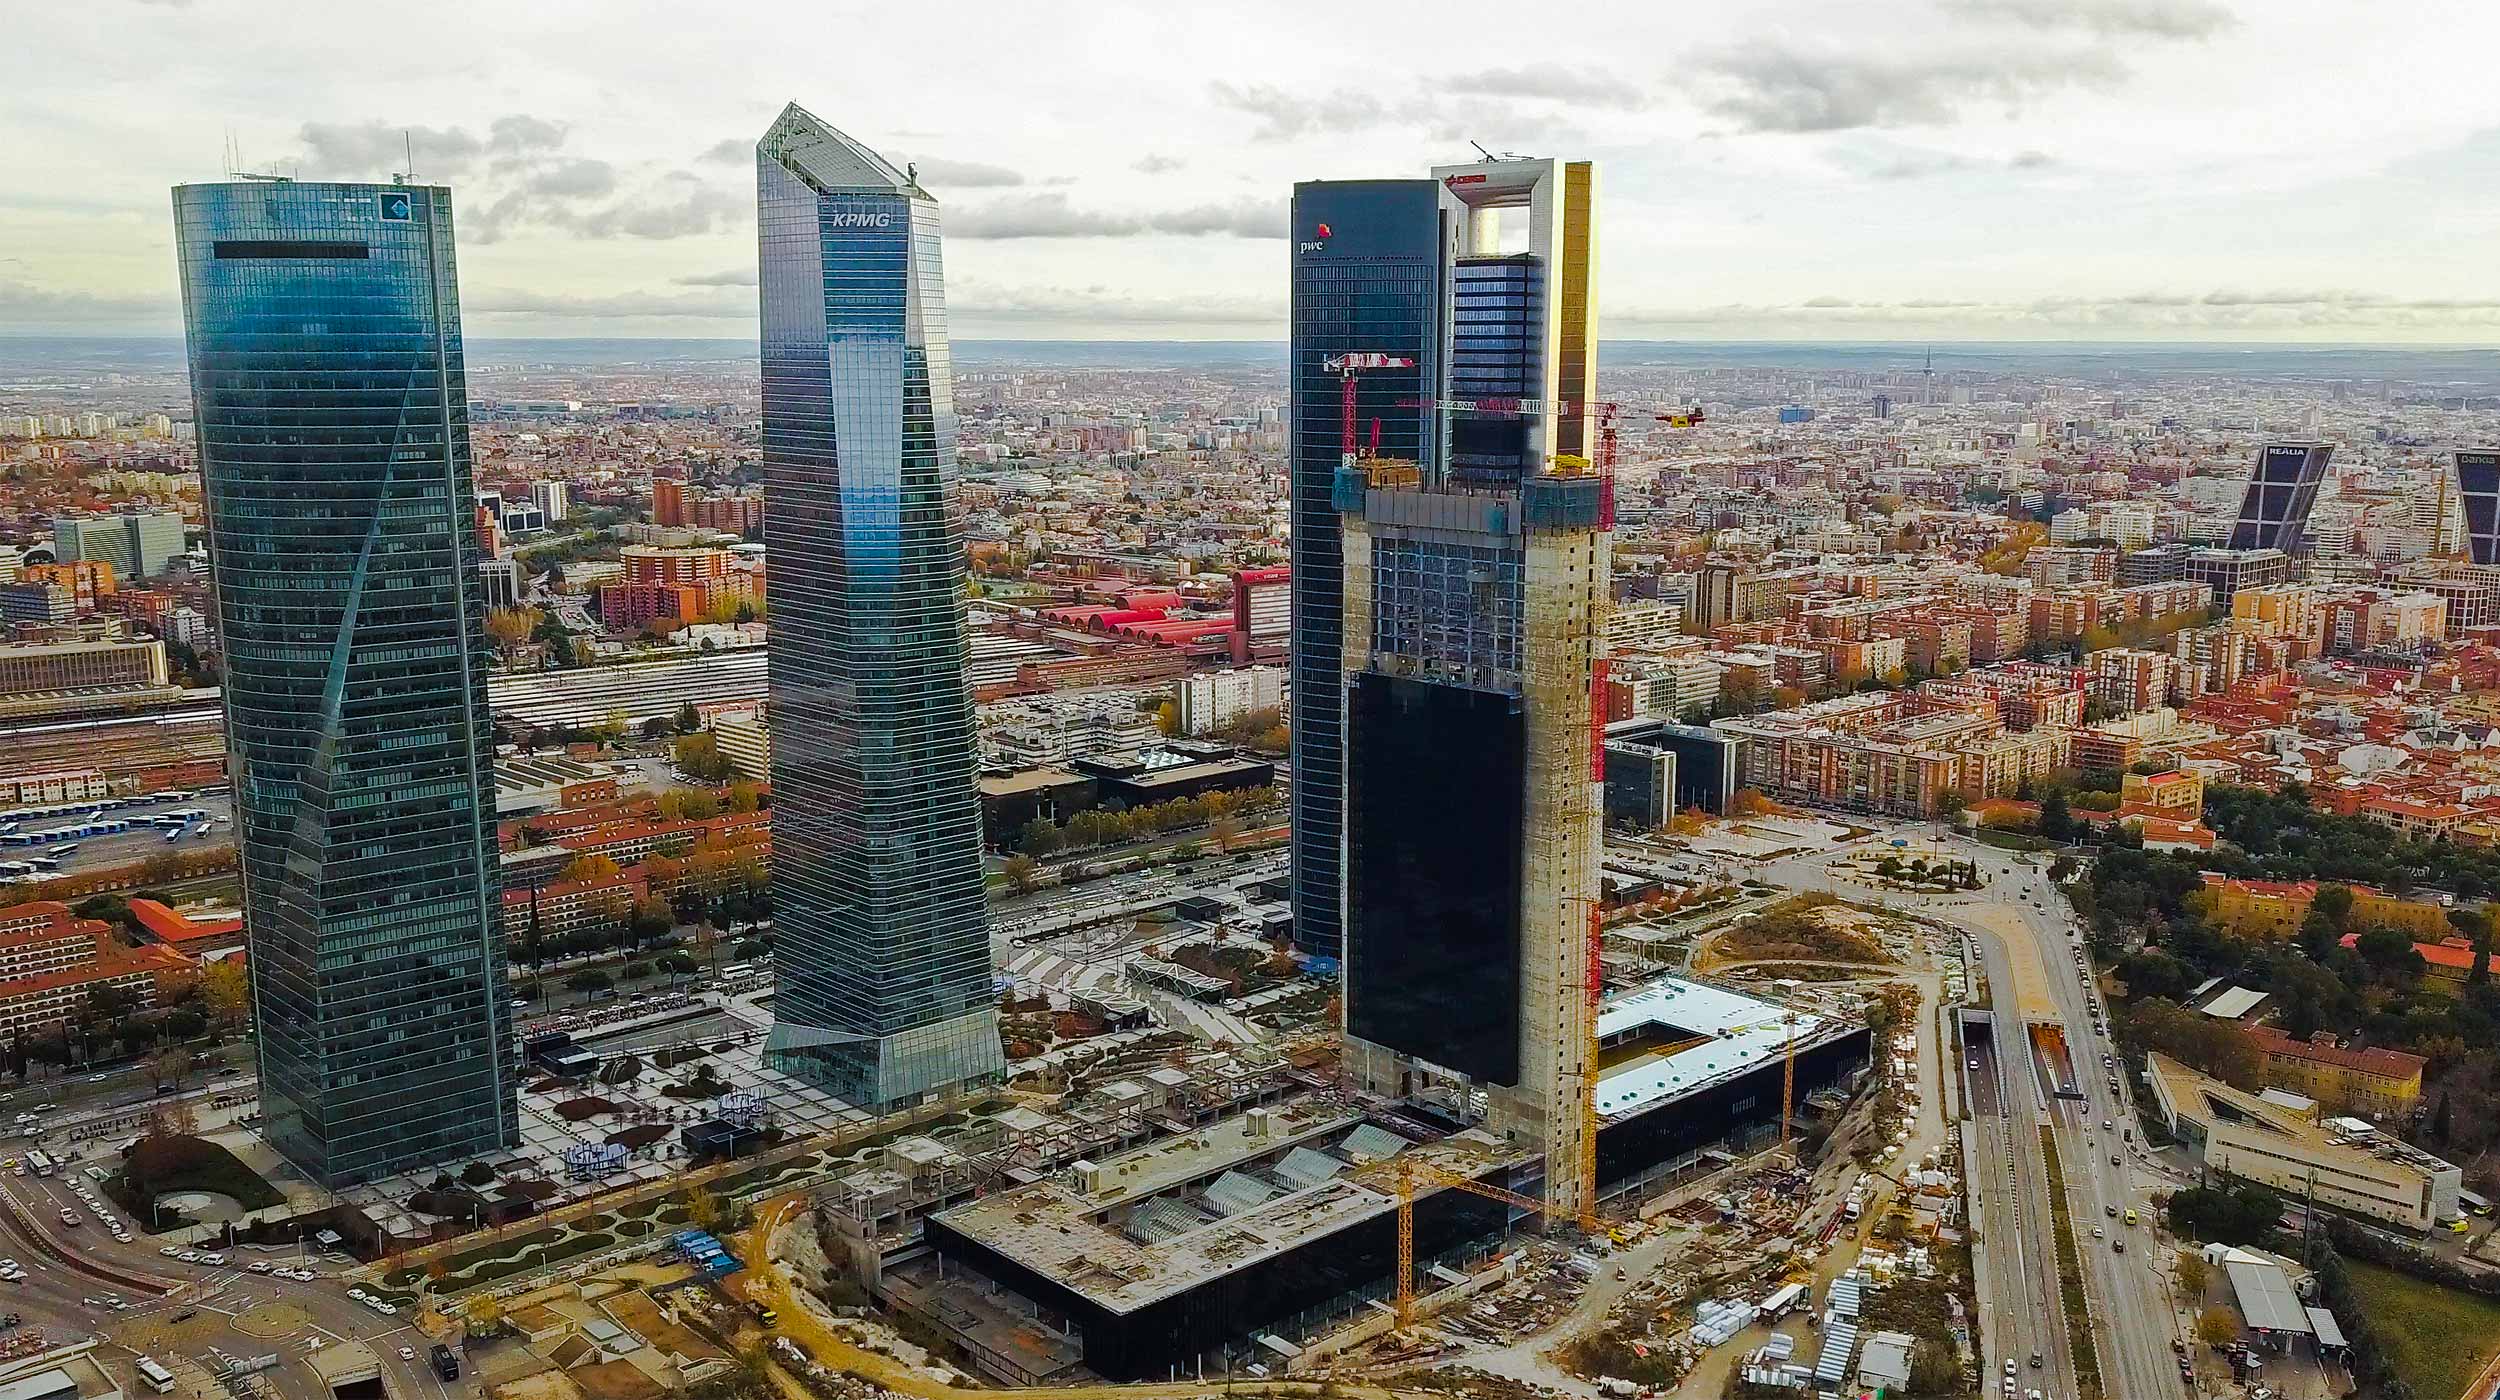 Caleido formará parte del skyline de Madrid como el quinto rascacielos o 'La Quinta Torre' de la zona financiera de la capital, Cuatro Torres Business Area.